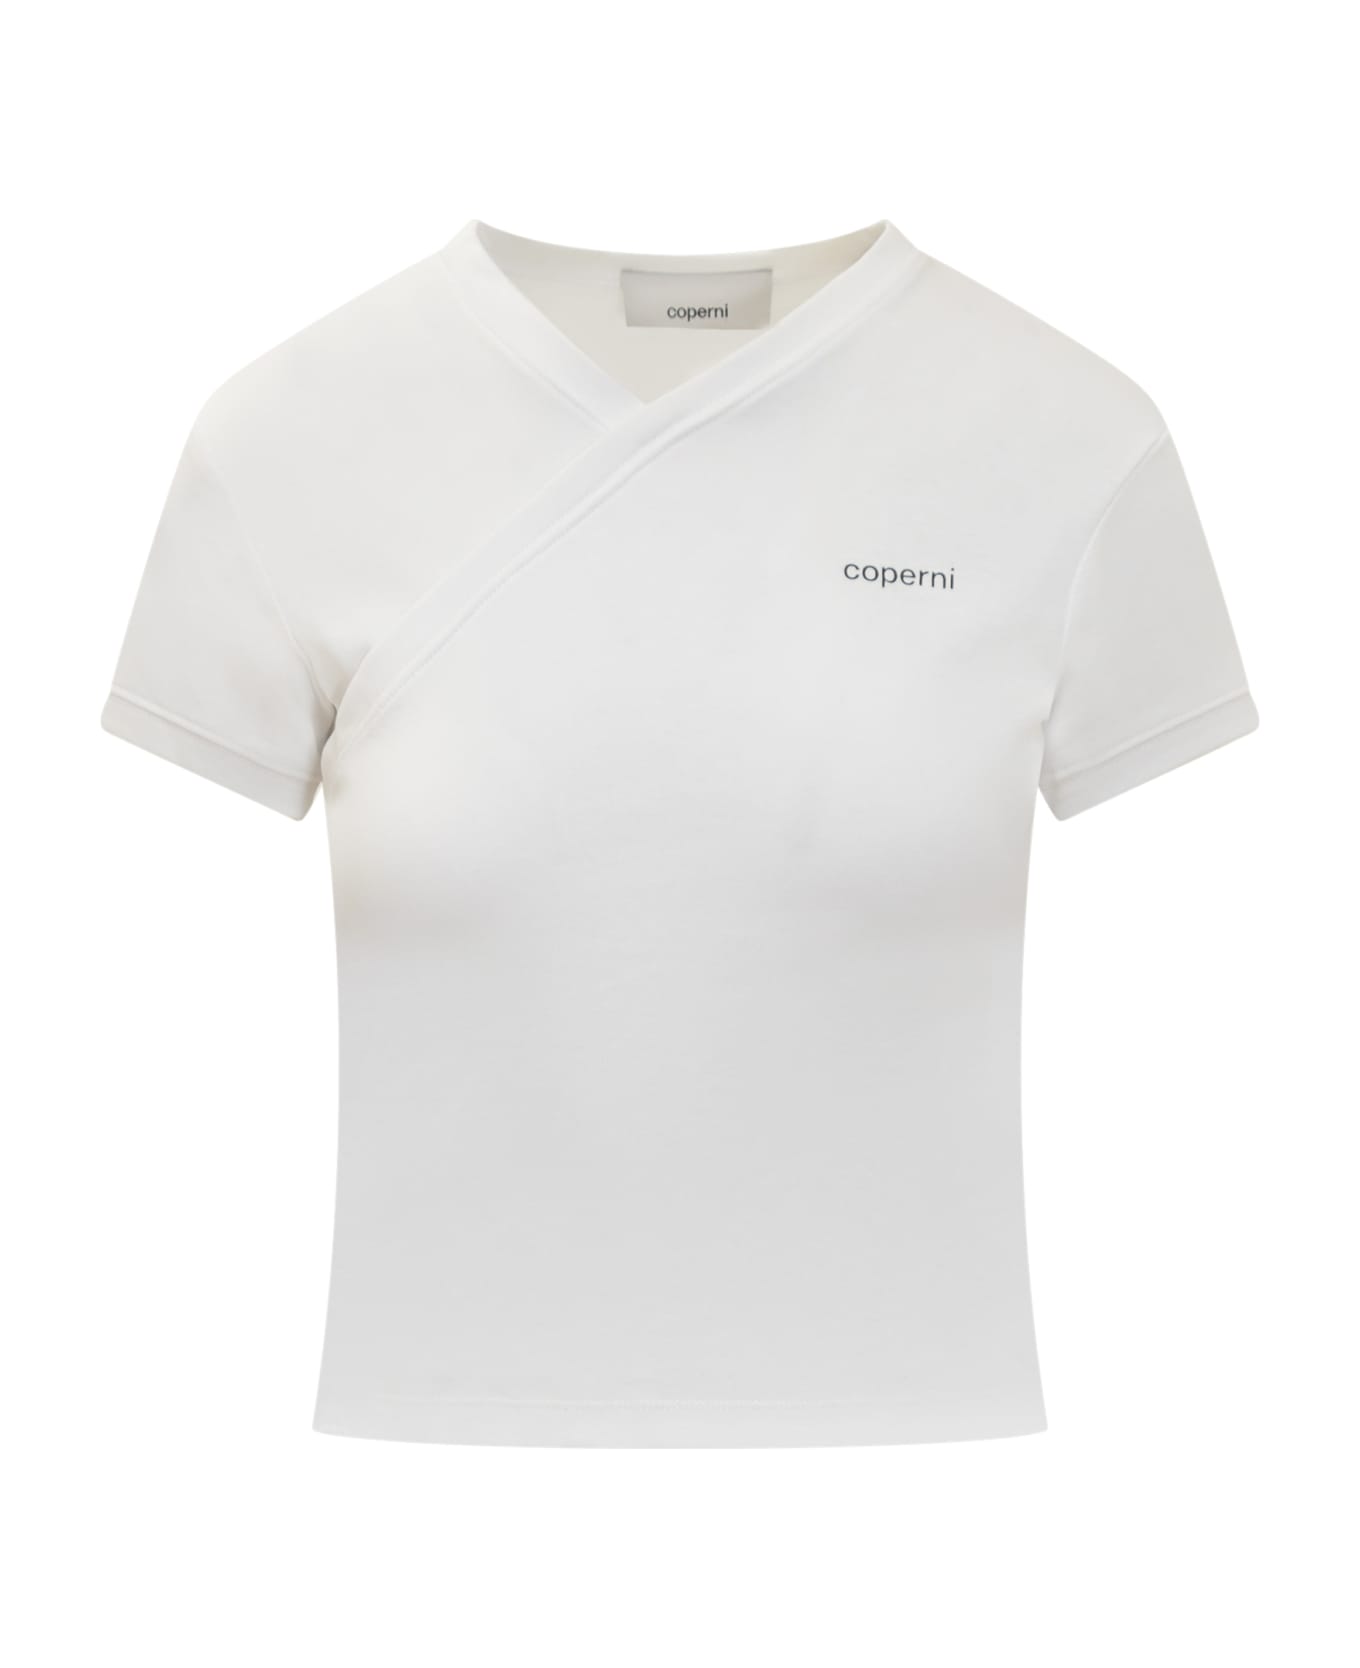 Coperni T-shirt - Optic White Tシャツ